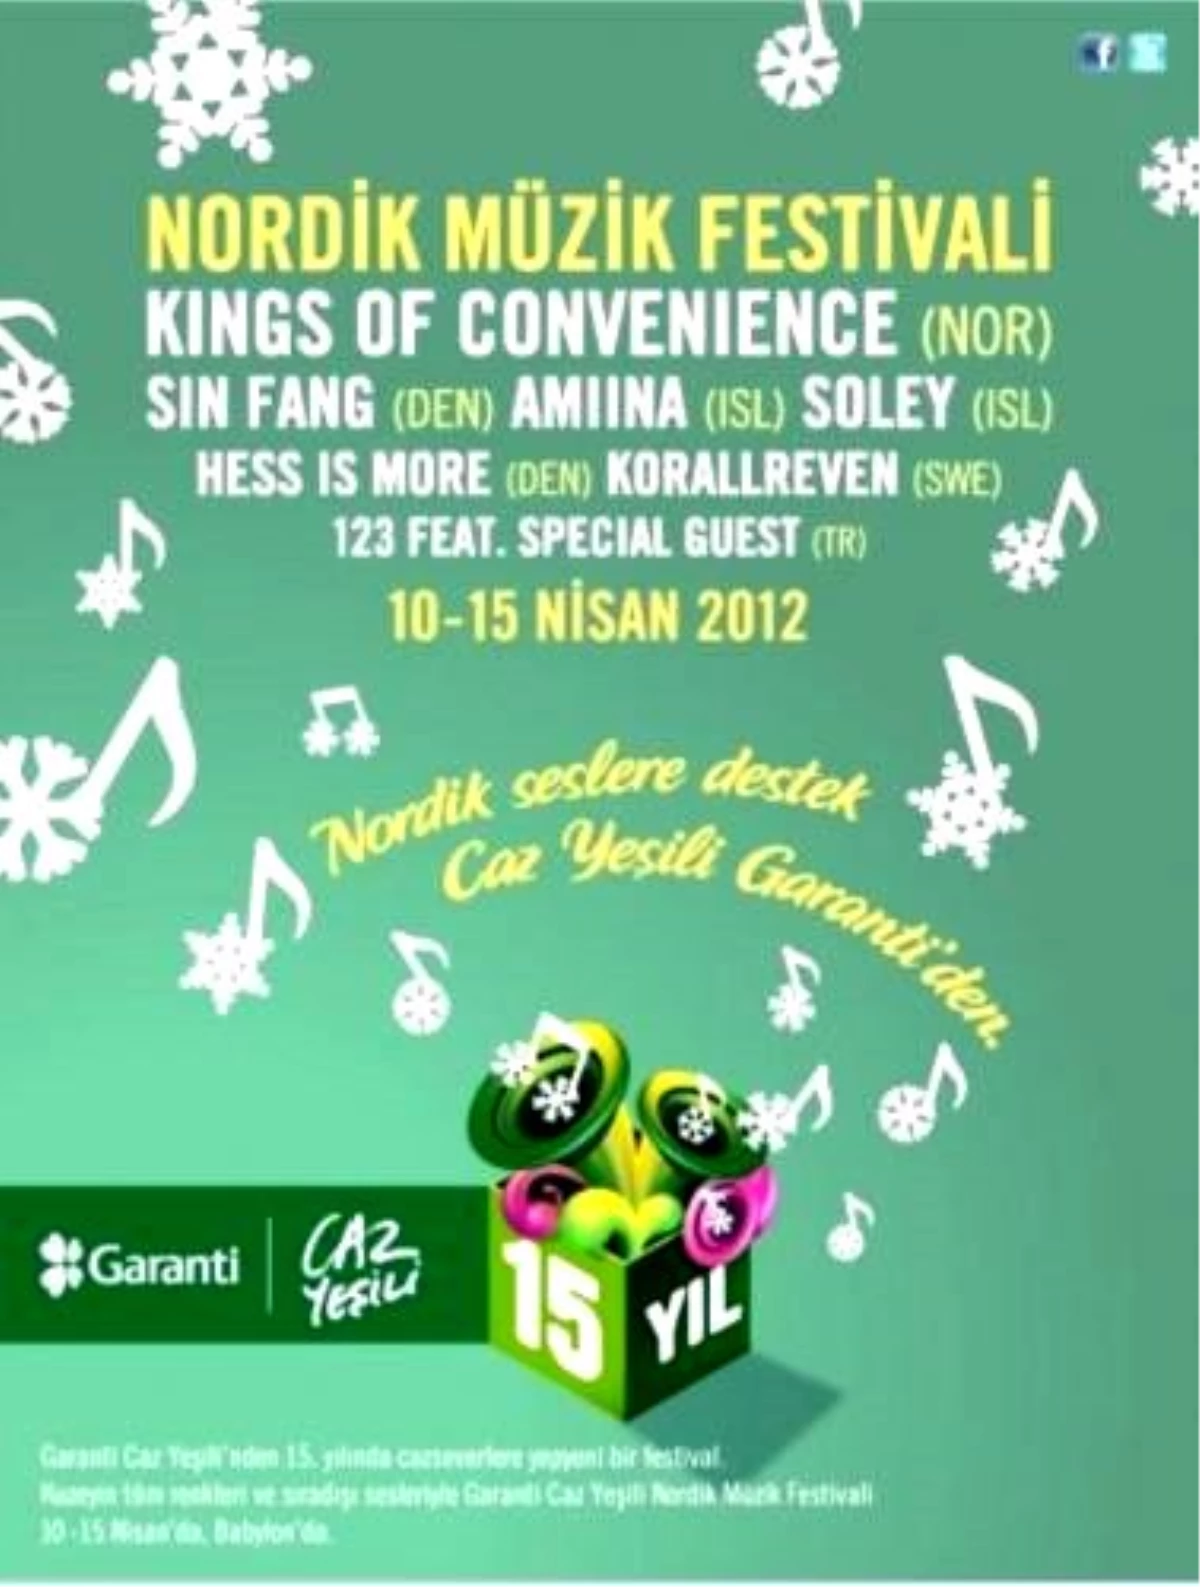 Garanti Caz Yeşili Nordik Müzik Festivali Sizi Bekliyor!